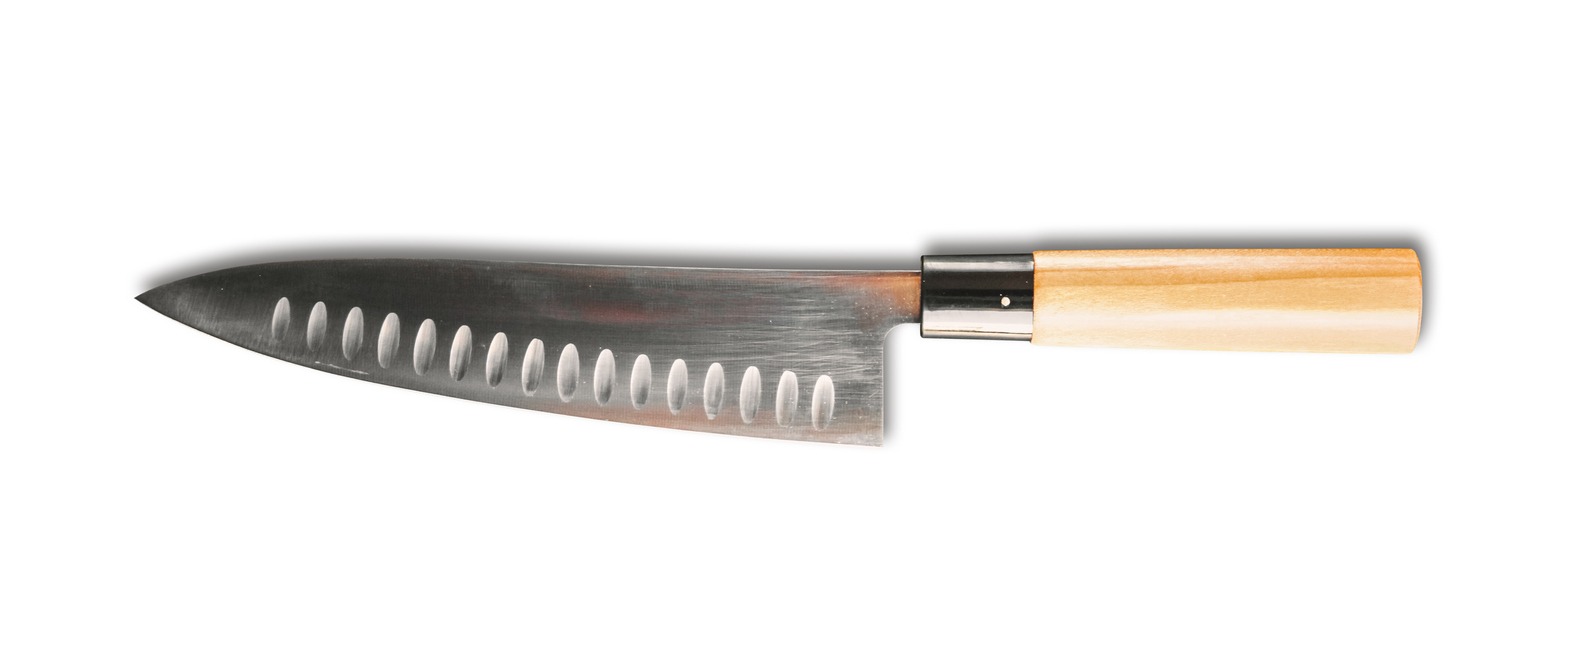 Santoku knife isolated on white background